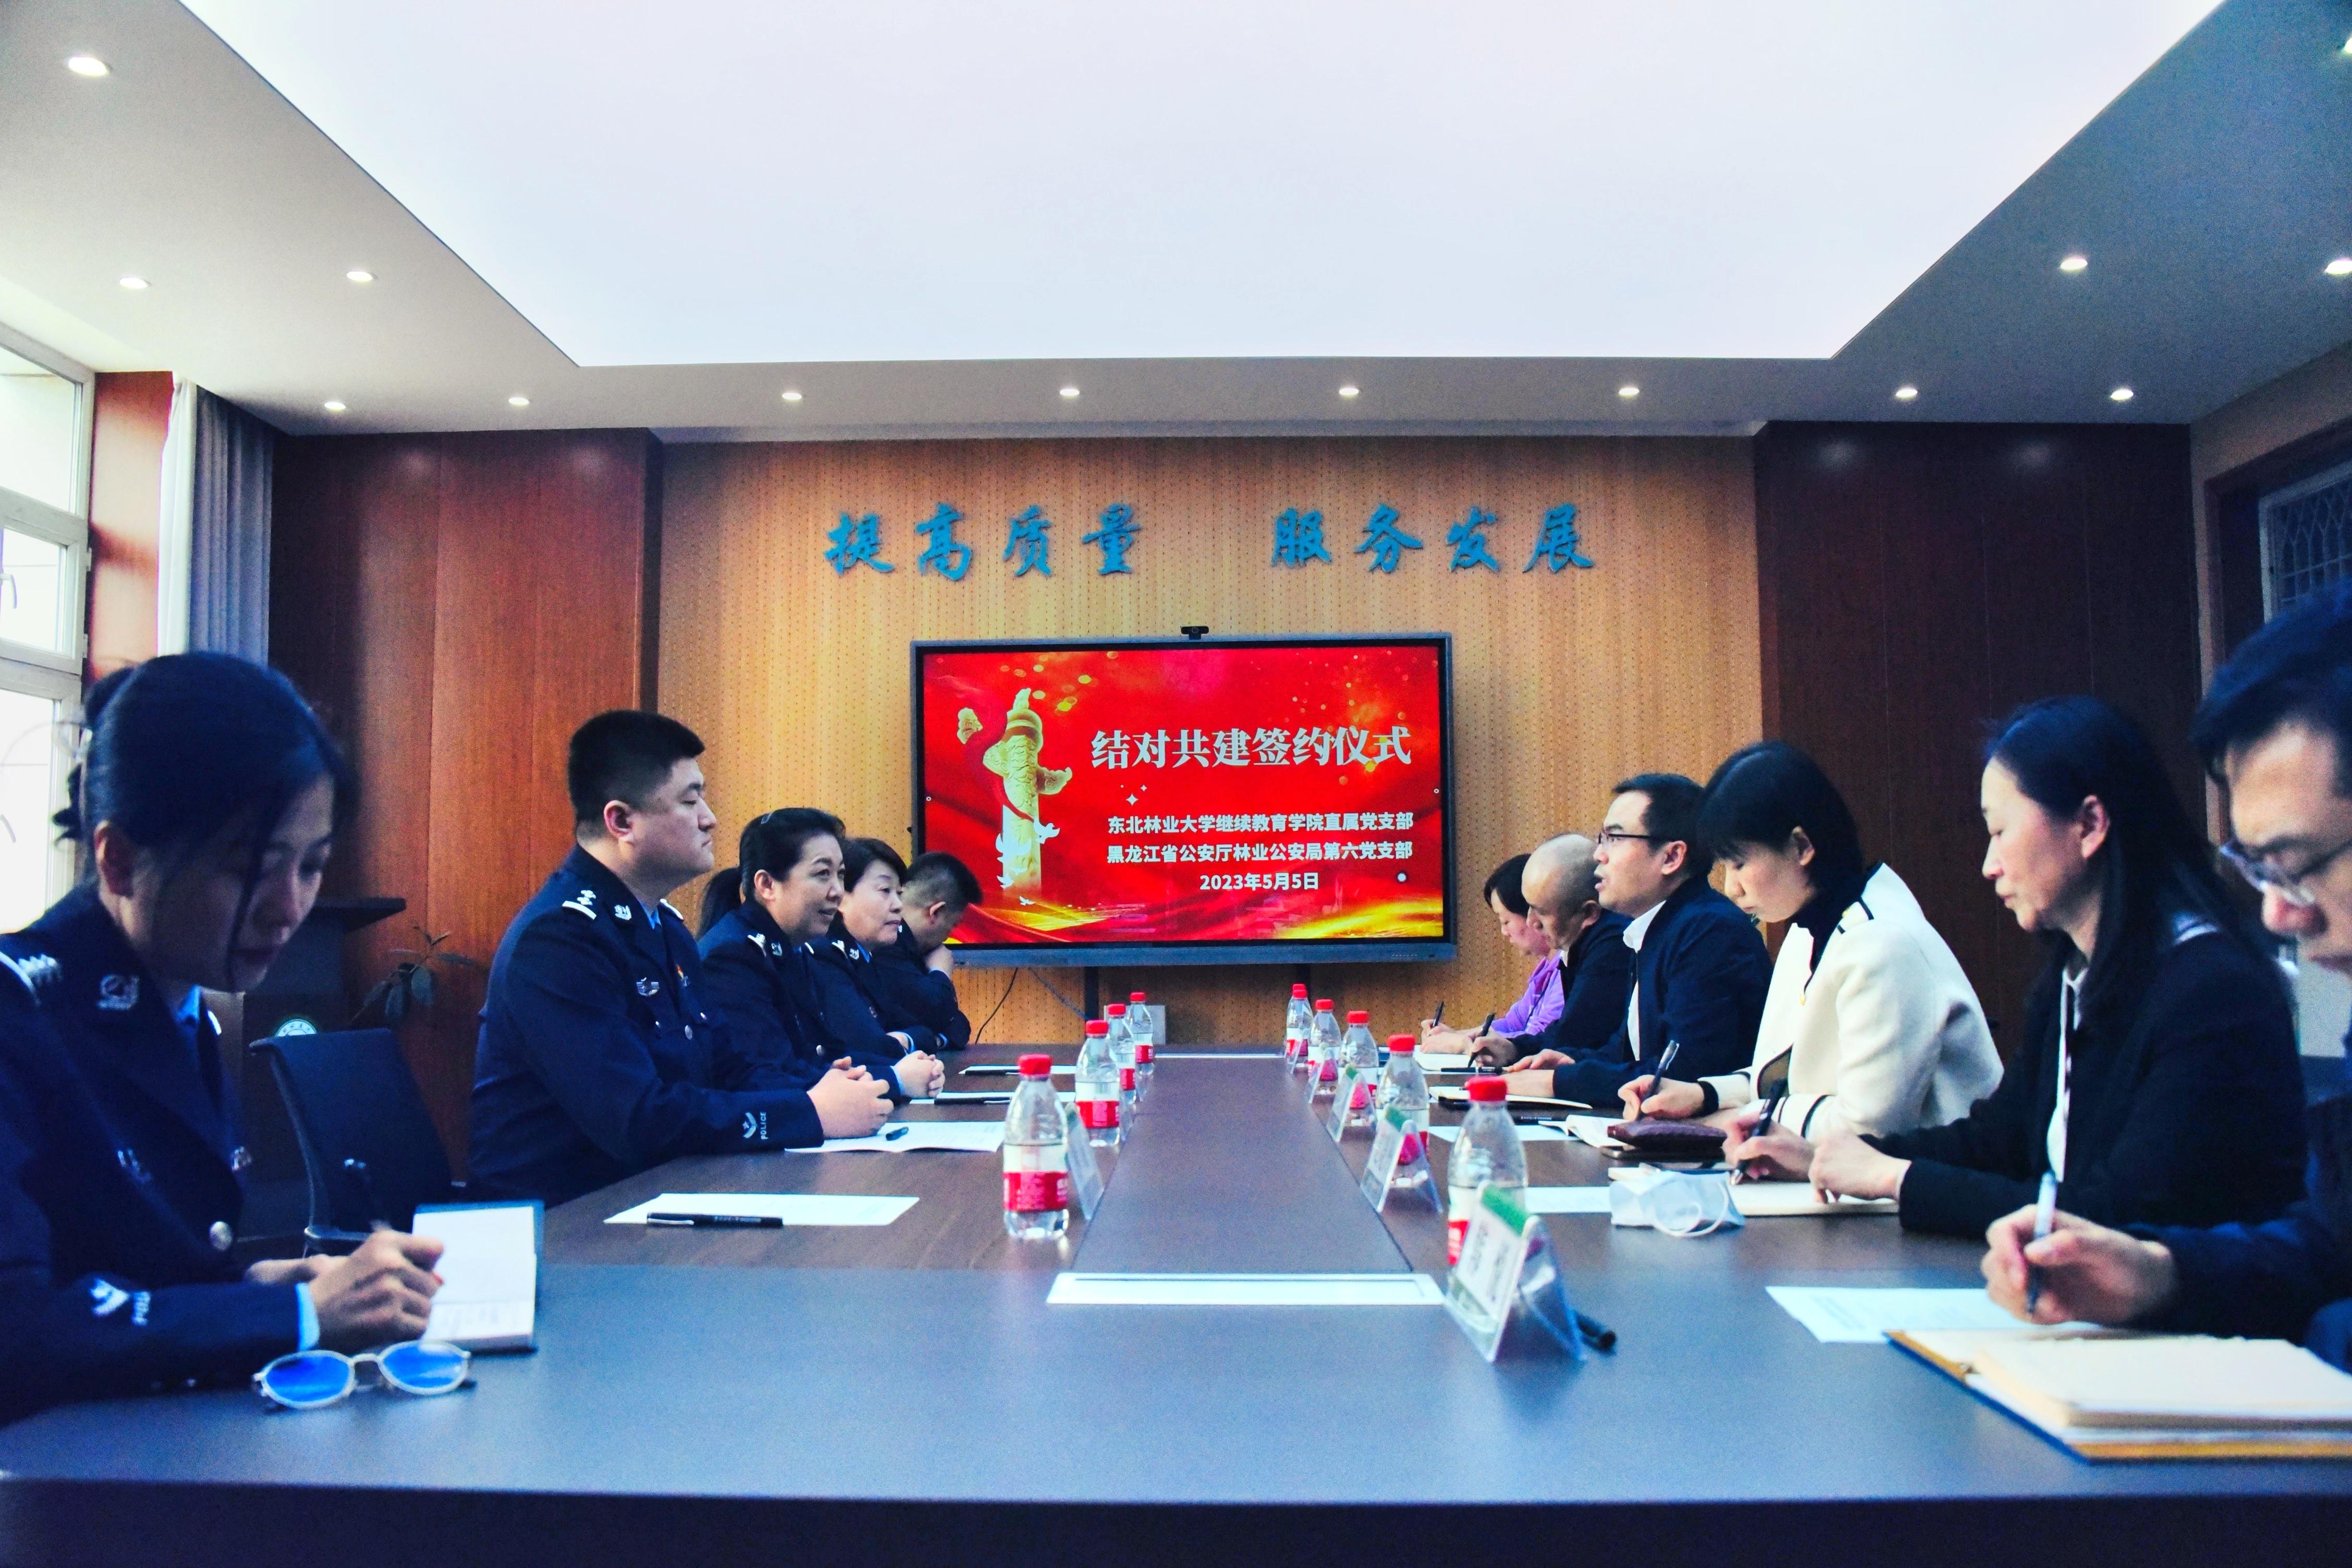 【主题教育】天博官网与黑龙江省公安厅林业公安局举行联学共建签约活动